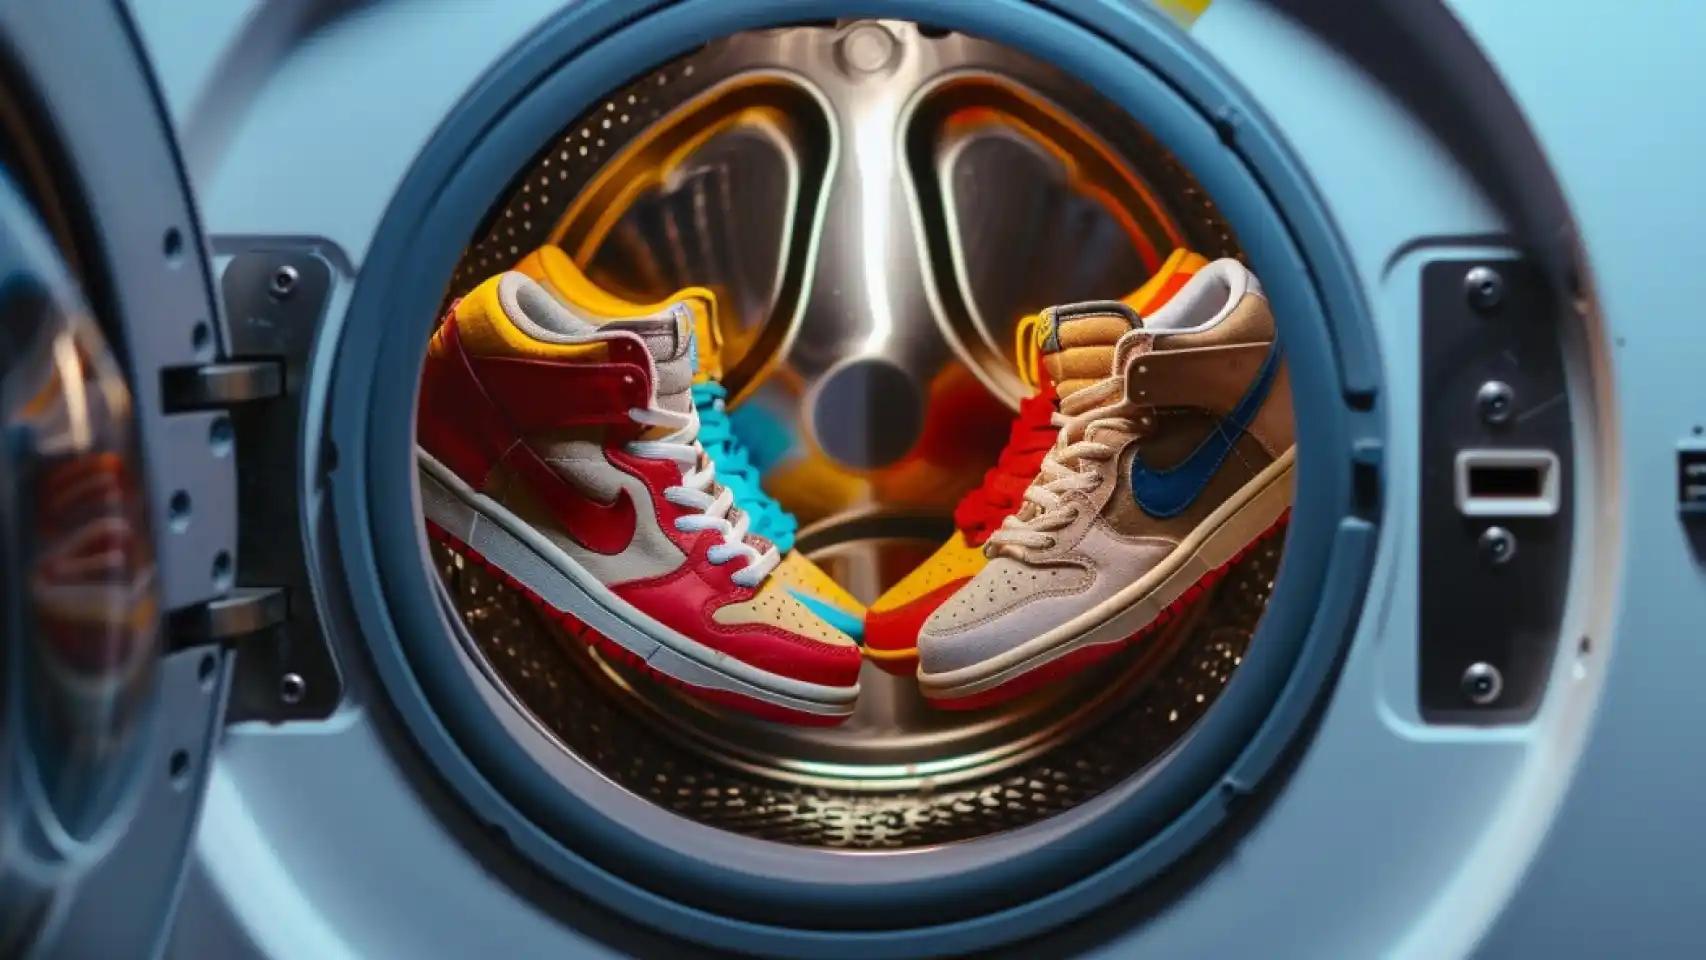 como lavar zapatillas en la lavadora - Cómo se deben lavar las zapatillas